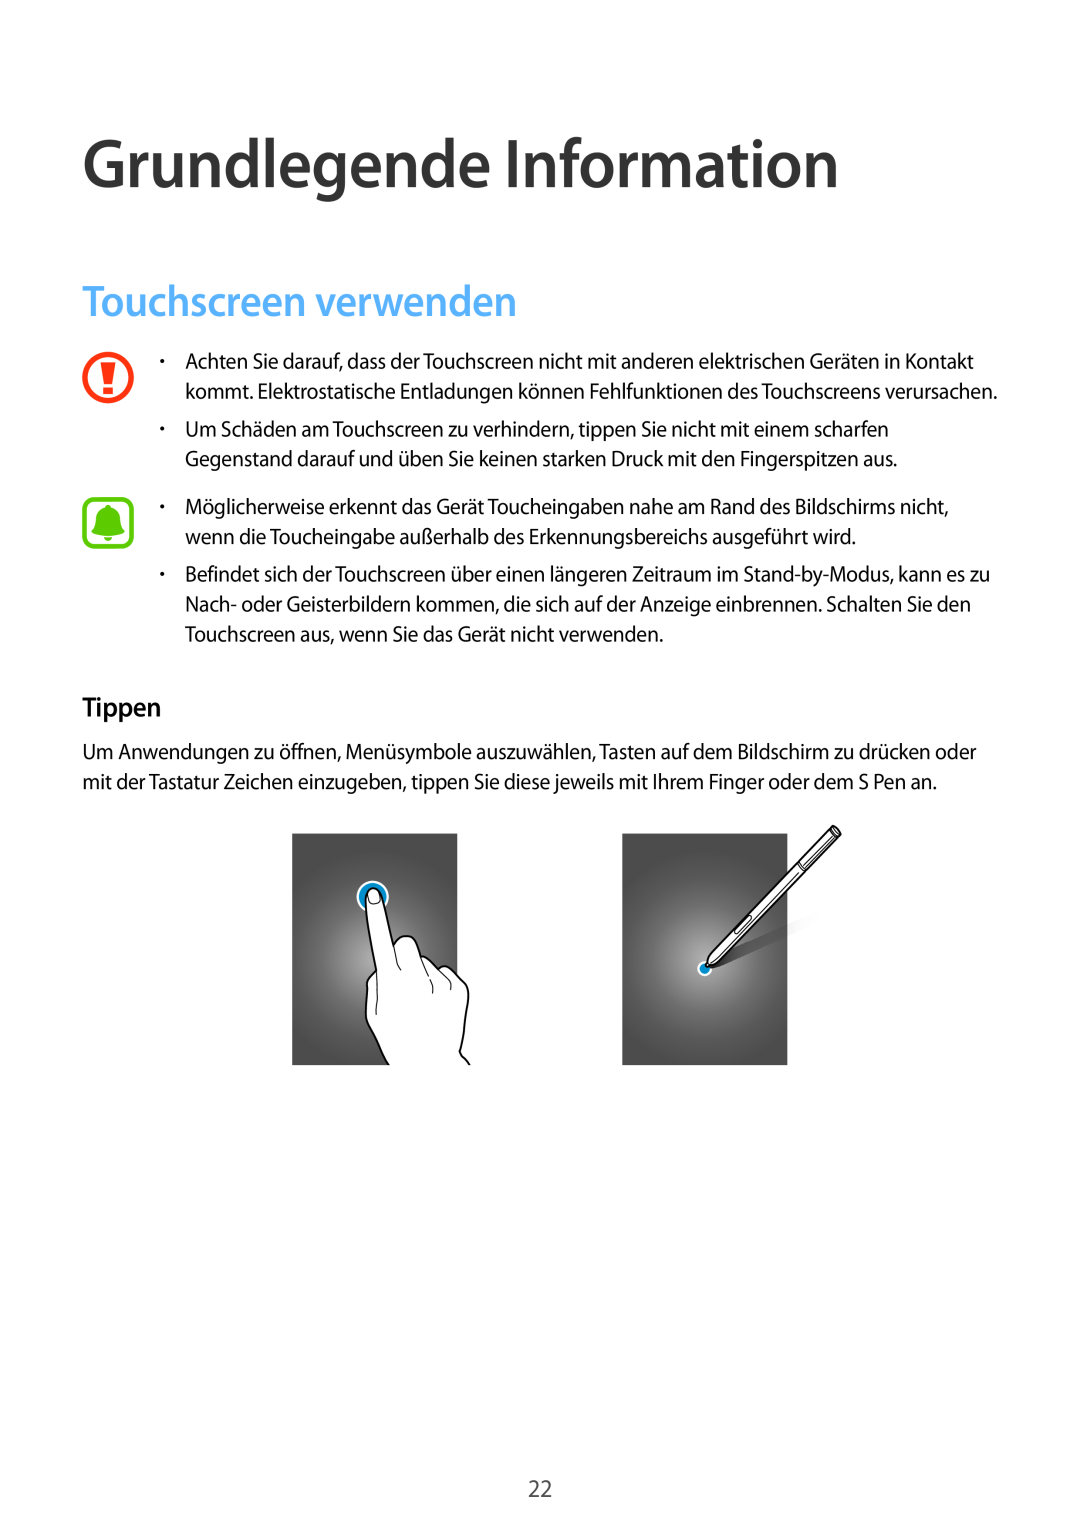 Samsung SM-N910FZKECYV, SM-N910FZWEEUR, SM-N910FZWEDRE manual Grundlegende Information, Touchscreen verwenden, Tippen 